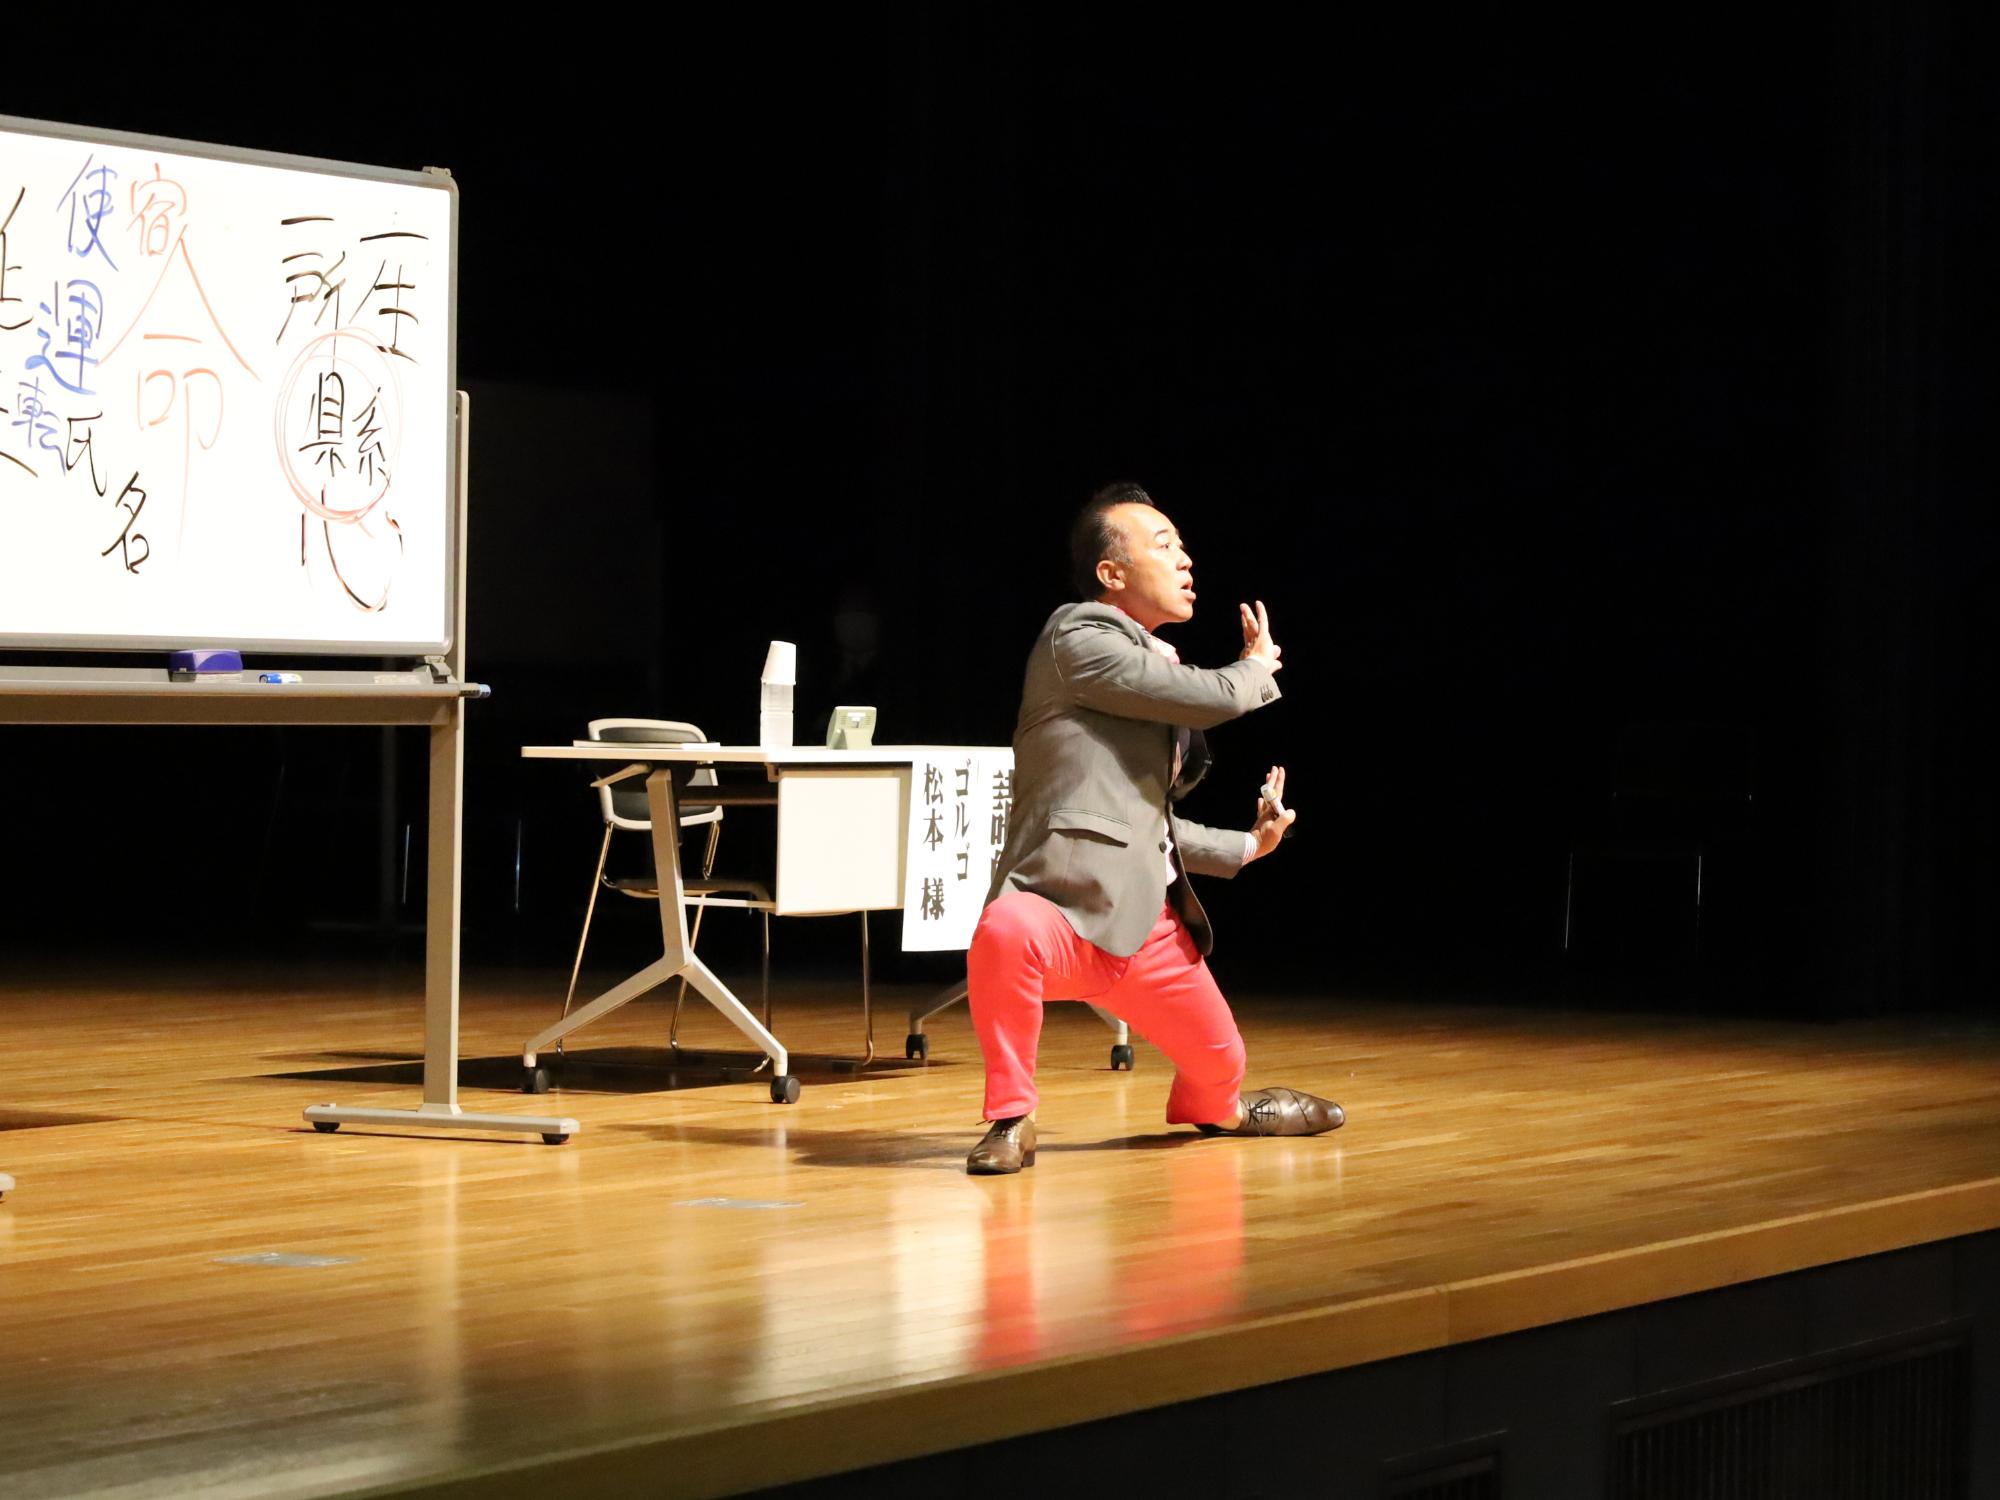 ゴルゴ松本氏講演会で、体を使って「心」を表現する様子